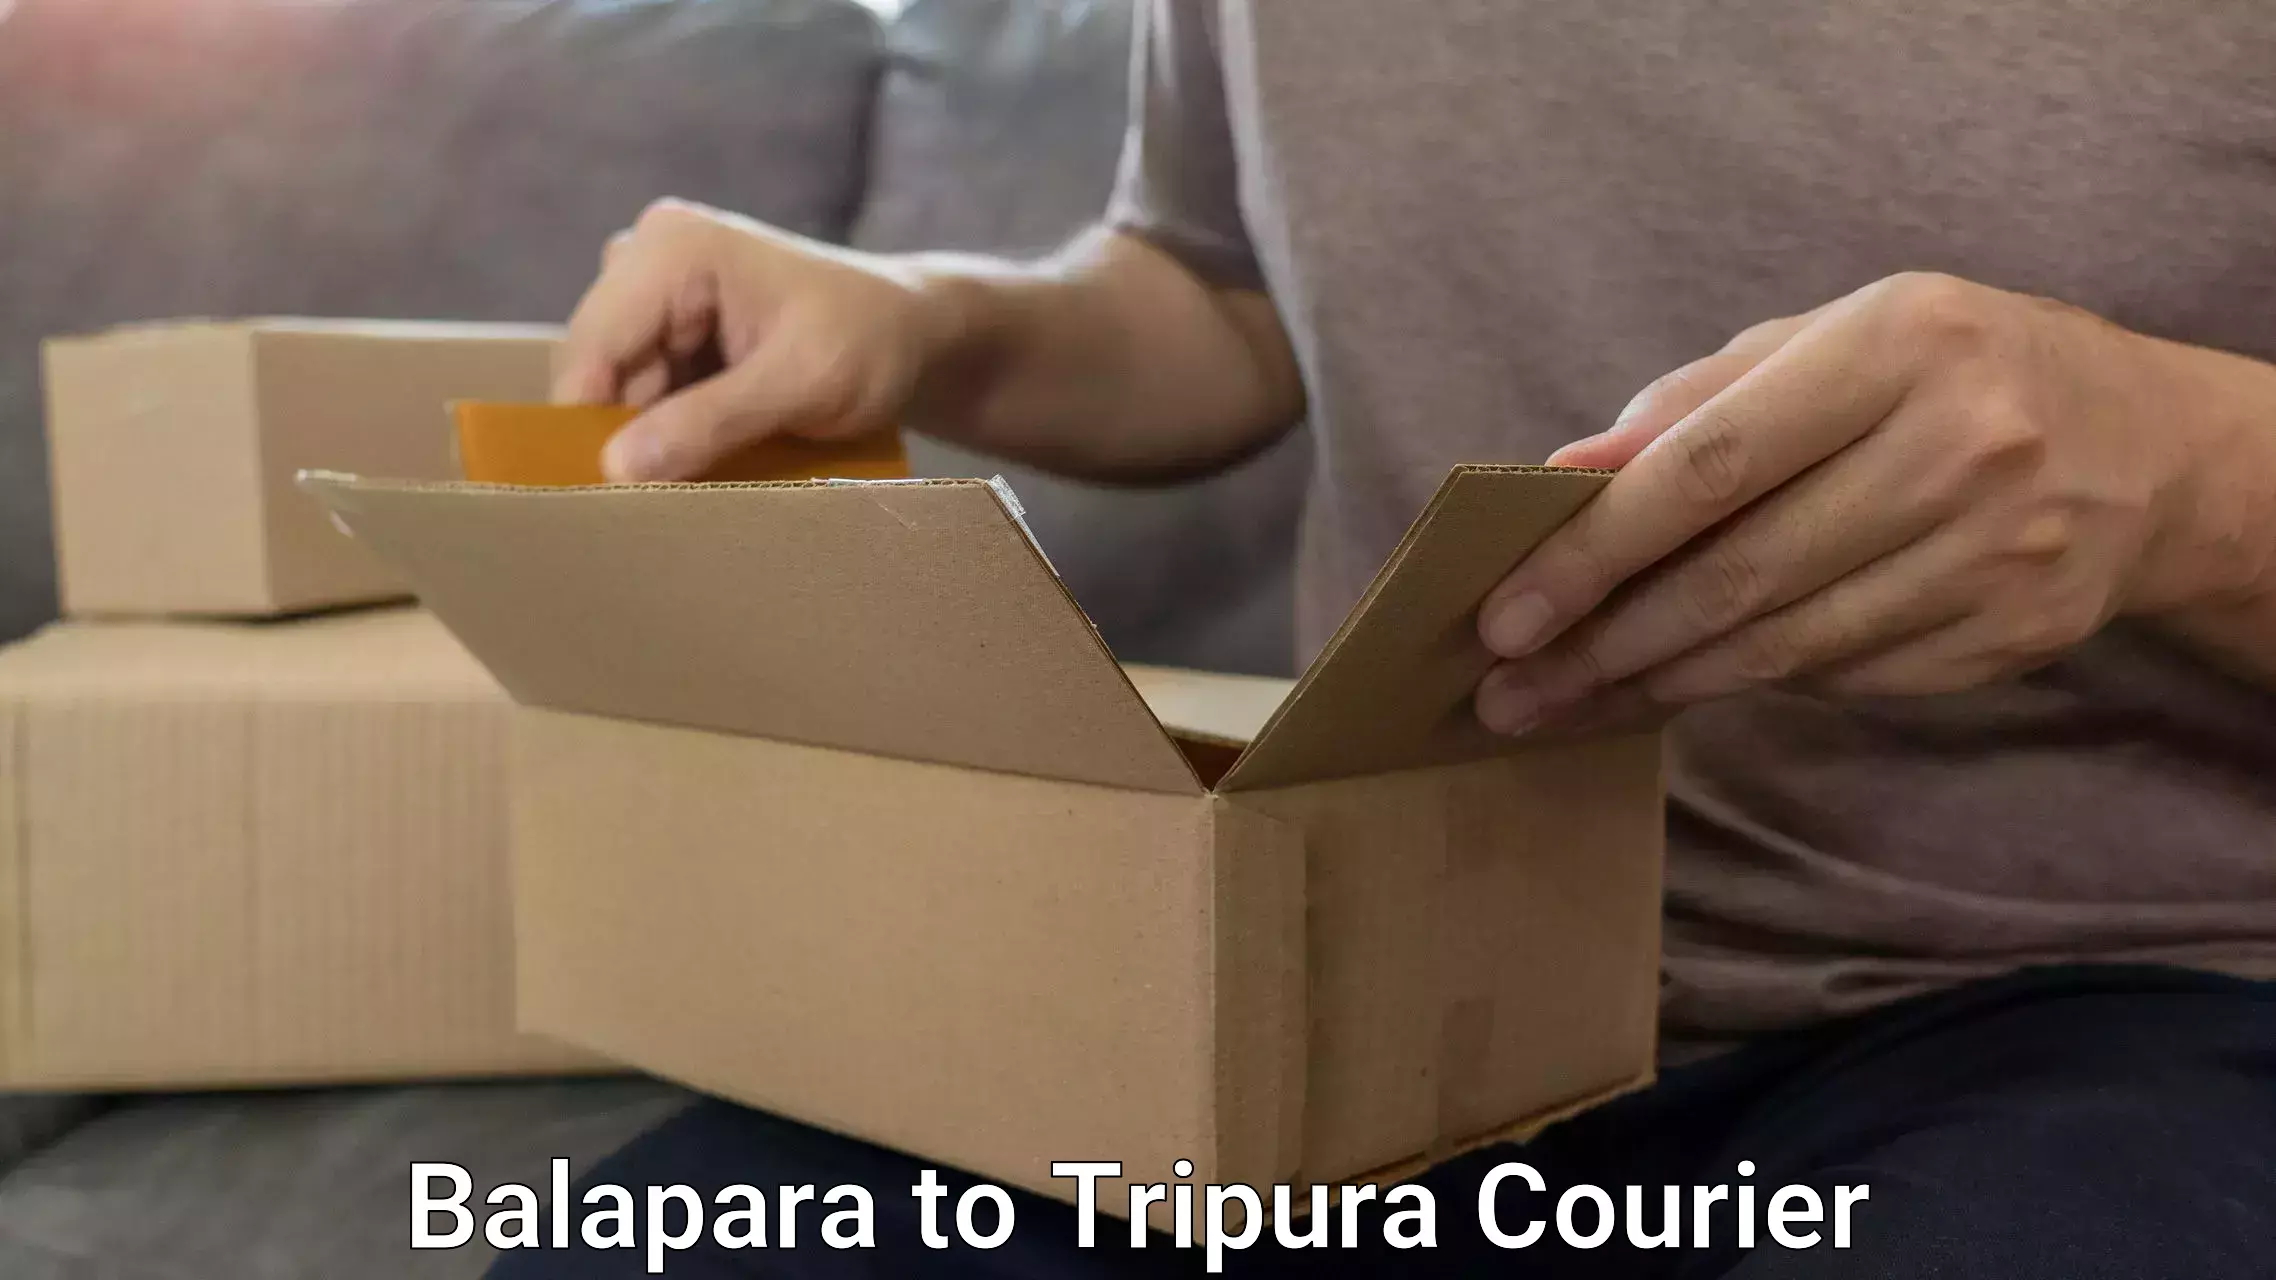 Baggage shipping service Balapara to Udaipur Tripura